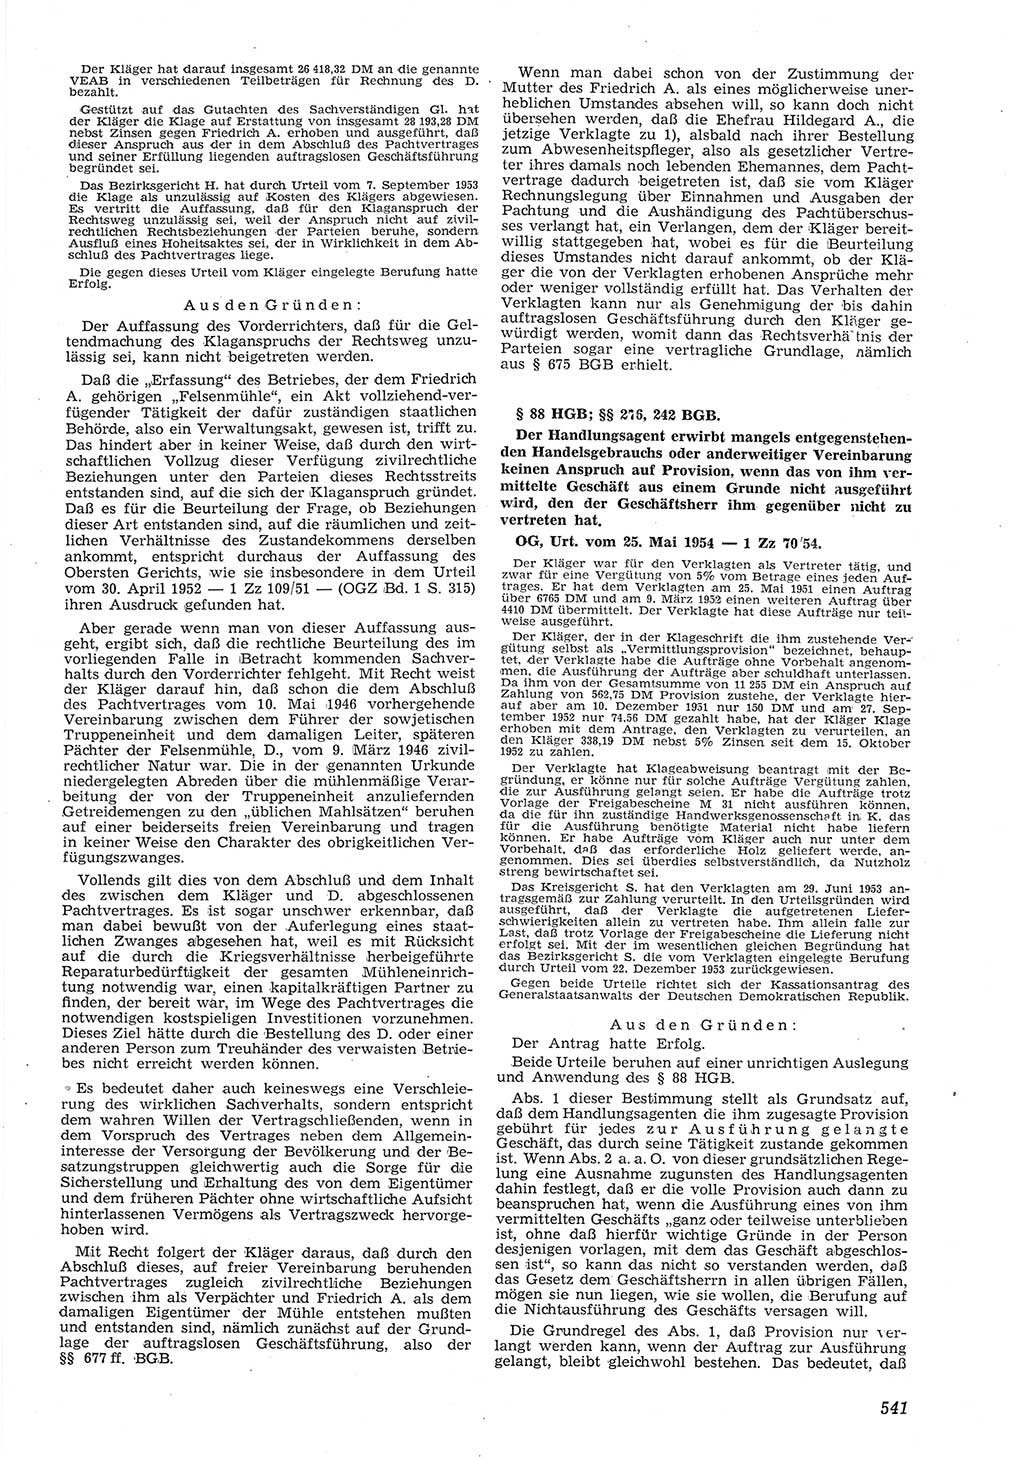 Neue Justiz (NJ), Zeitschrift für Recht und Rechtswissenschaft [Deutsche Demokratische Republik (DDR)], 8. Jahrgang 1954, Seite 541 (NJ DDR 1954, S. 541)